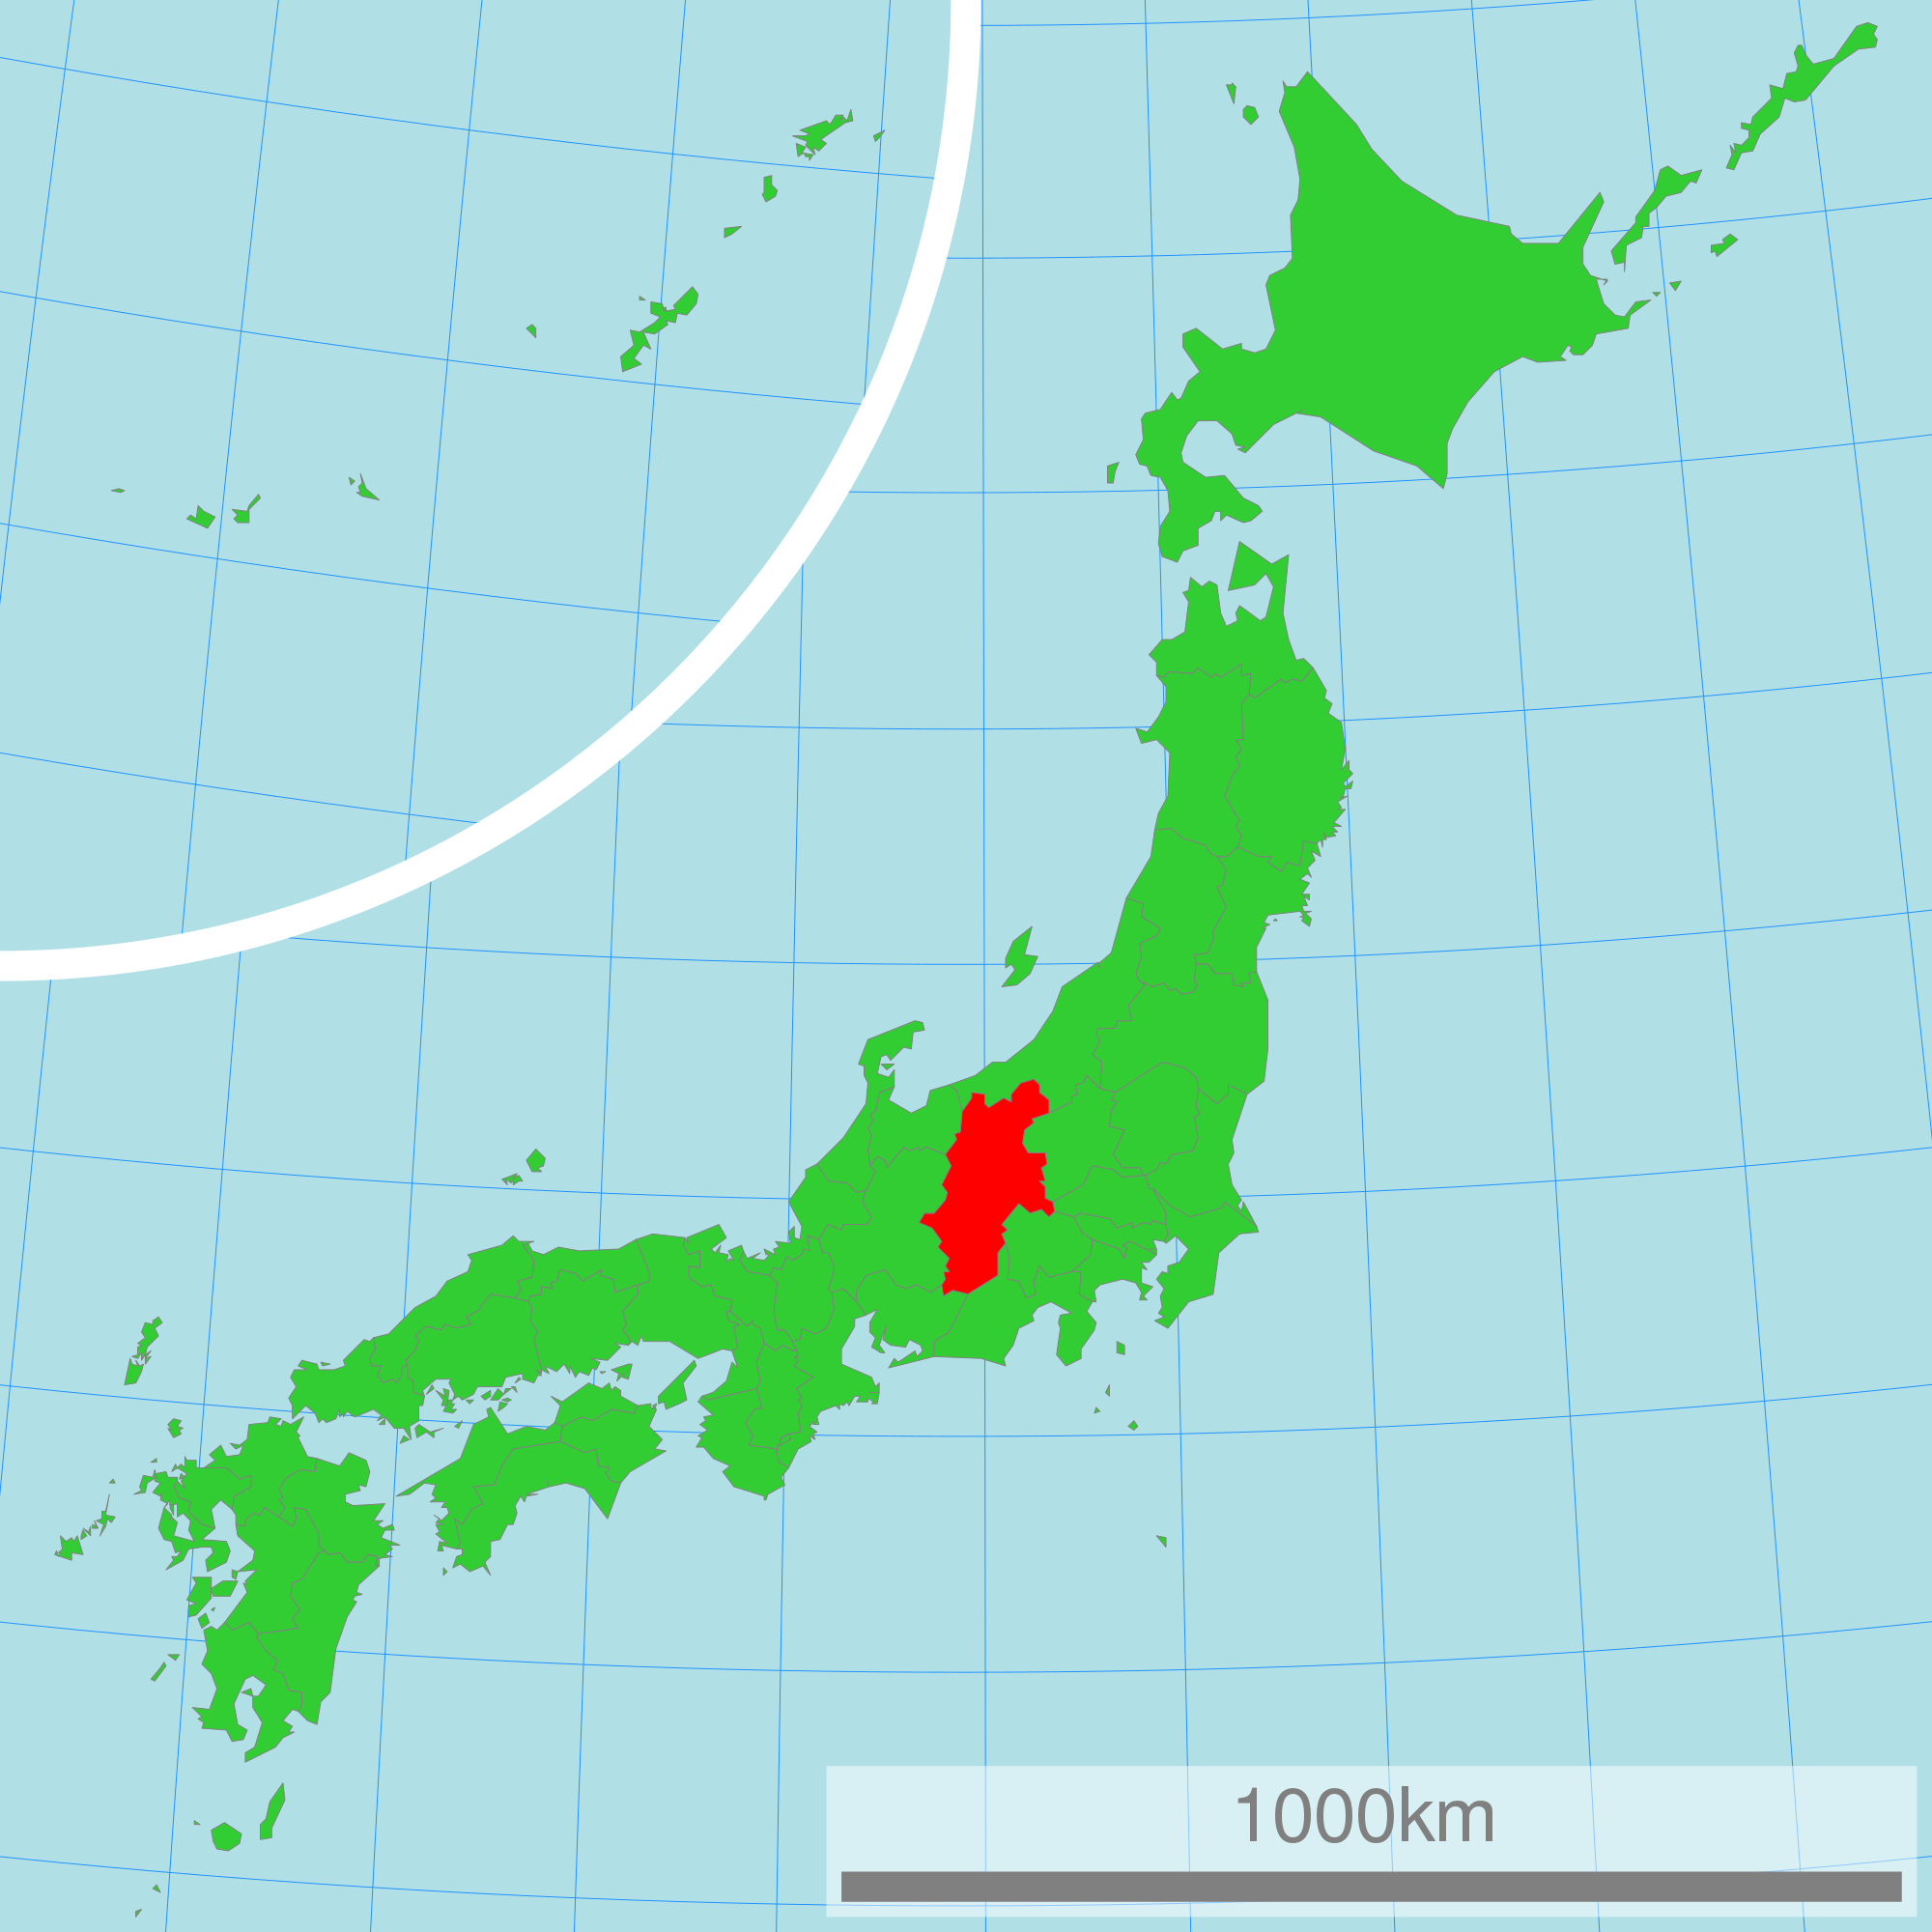 にゃんだか、 長野県、地震多くにゃい? わて、 長野県って聞くと